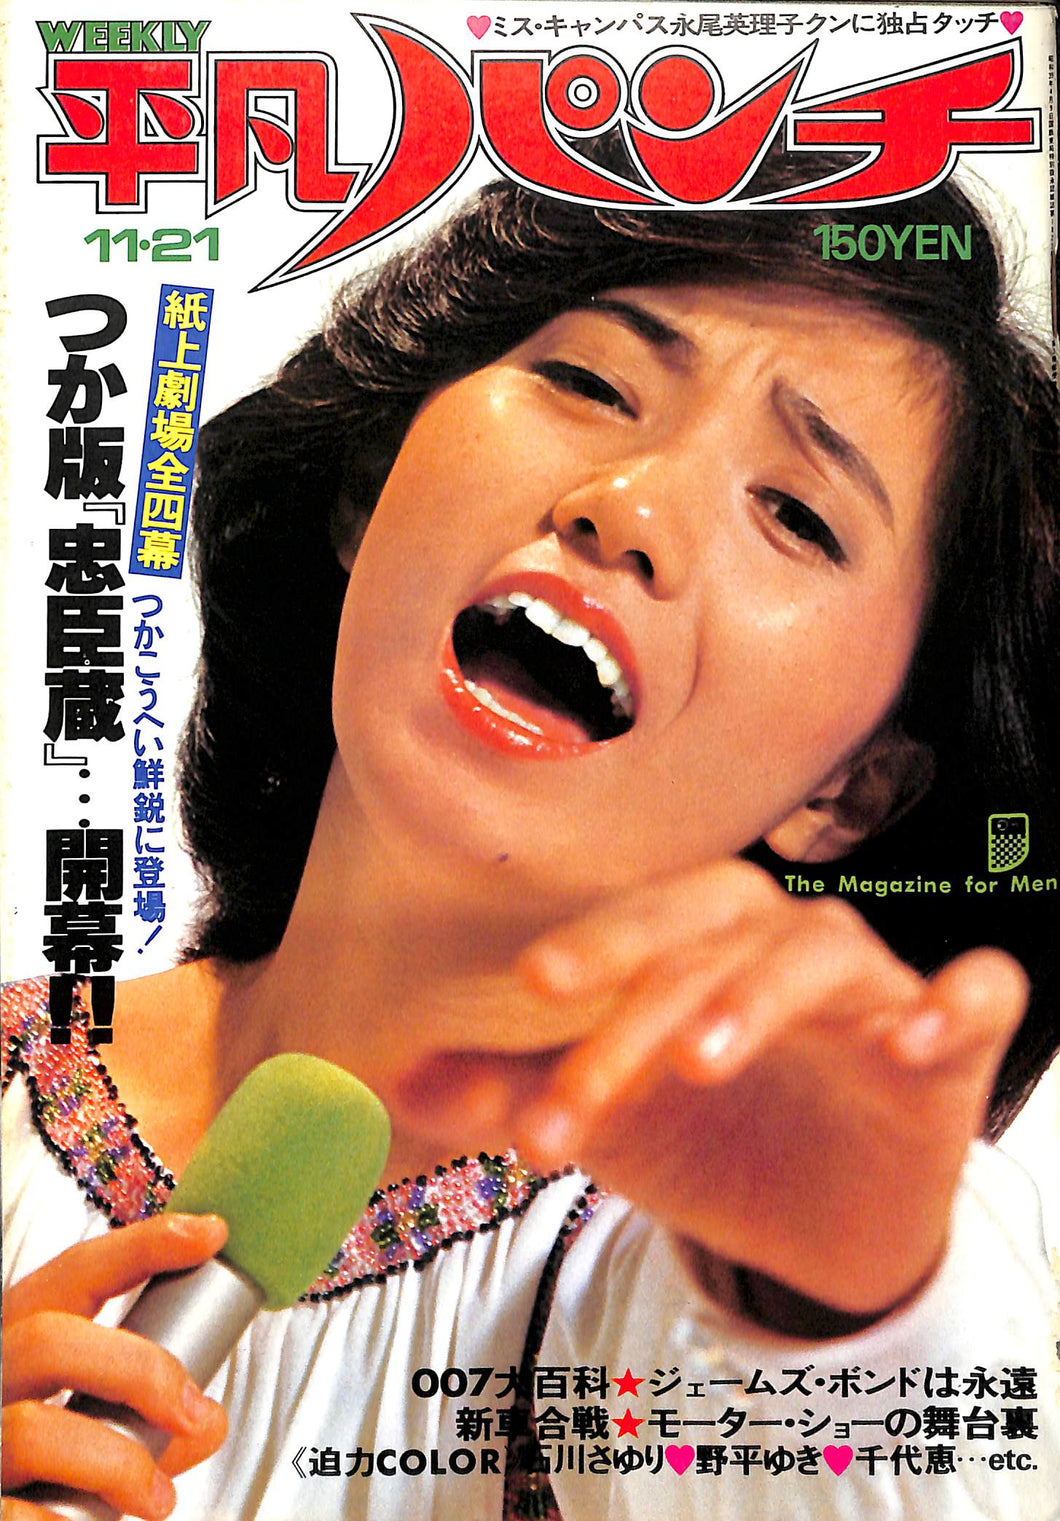 週刊平凡パンチ 1977年 11月20日号 石川さゆり つかこうへい 池田満寿夫